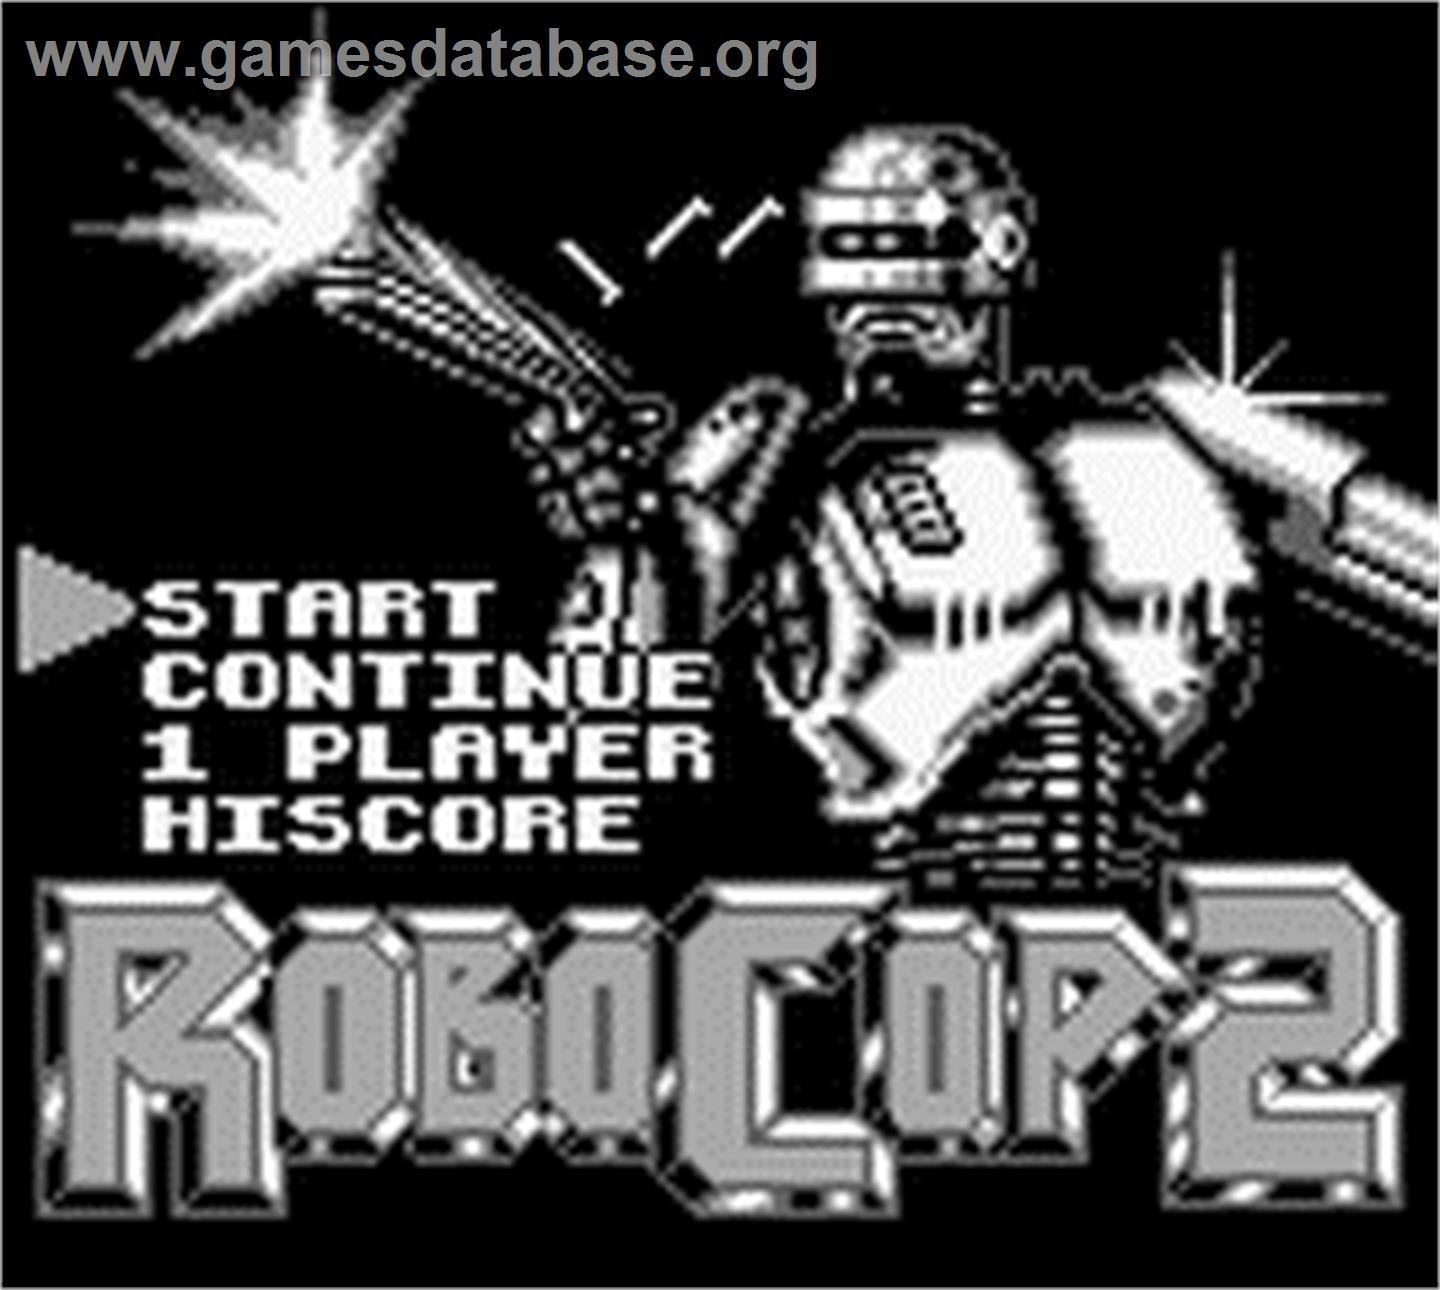 Robocop 2 - Nintendo Game Boy - Artwork - Title Screen